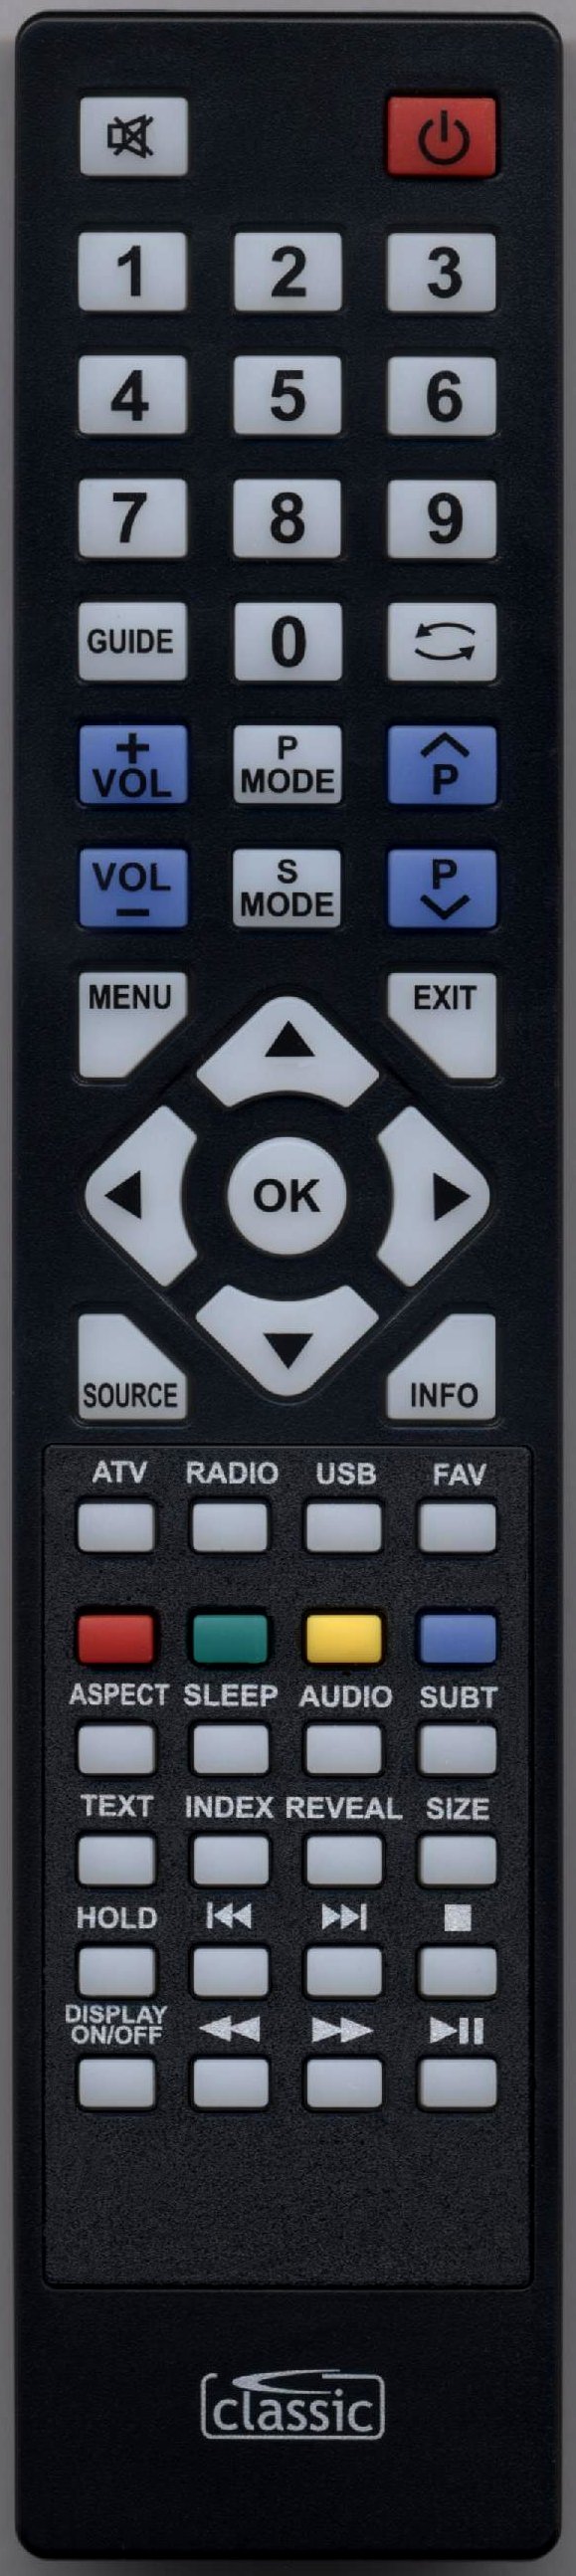 Emotion X2369 Remote Control